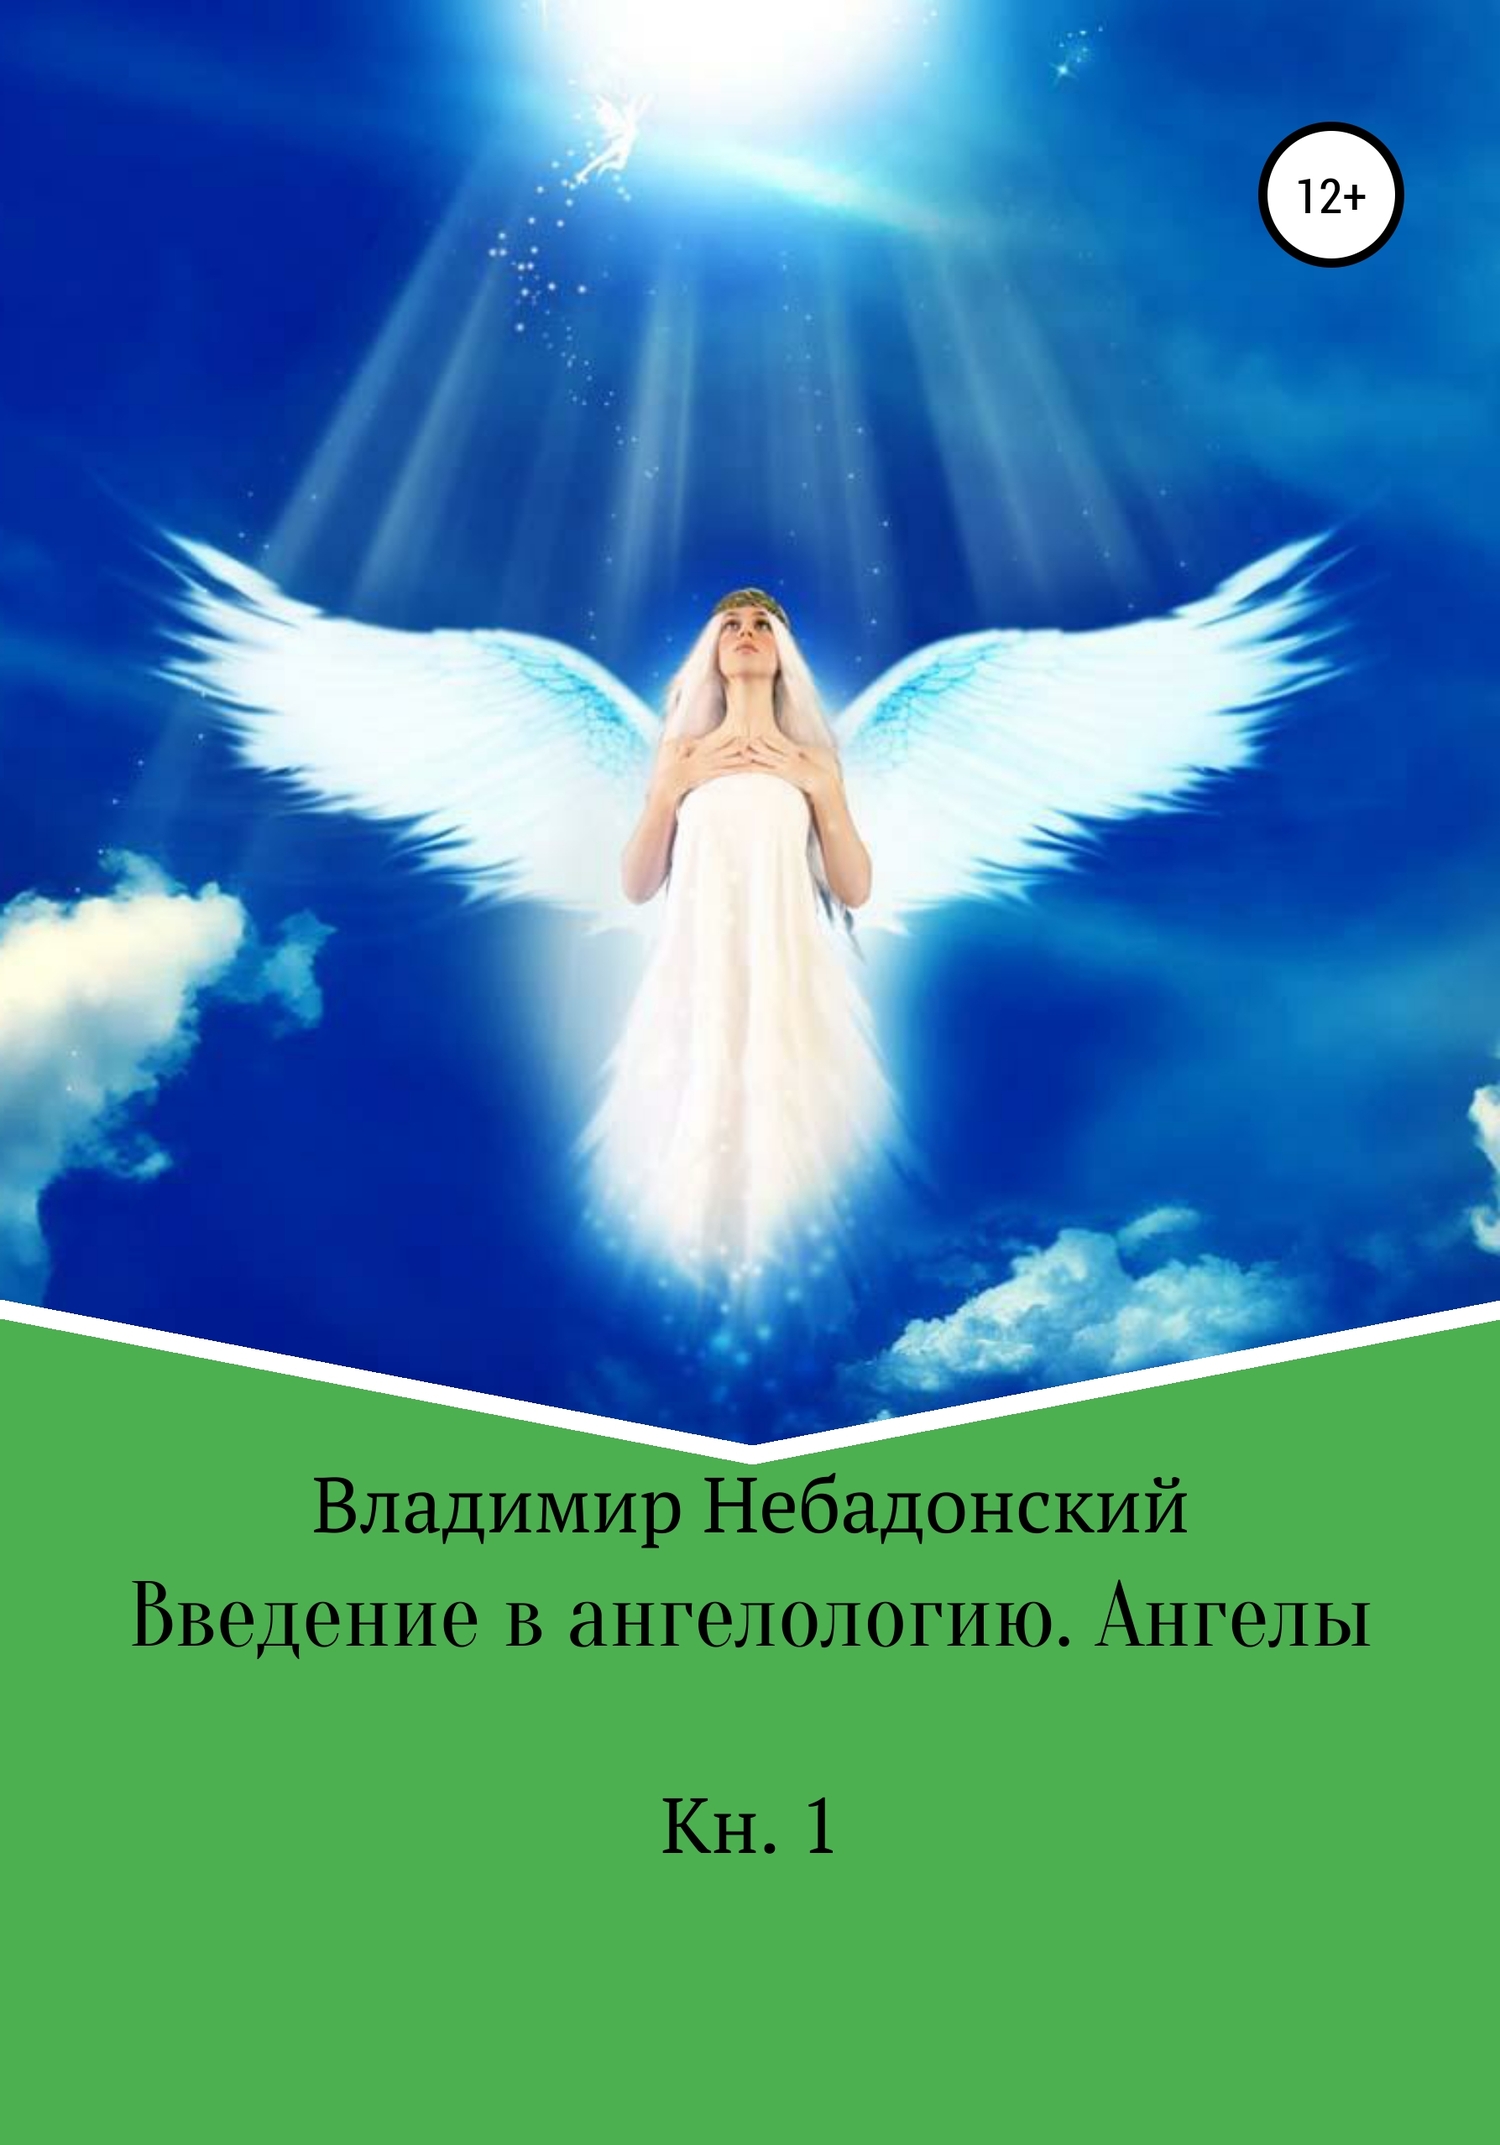 Введение в ангелологию. Ангелы - Владимир Небадонский